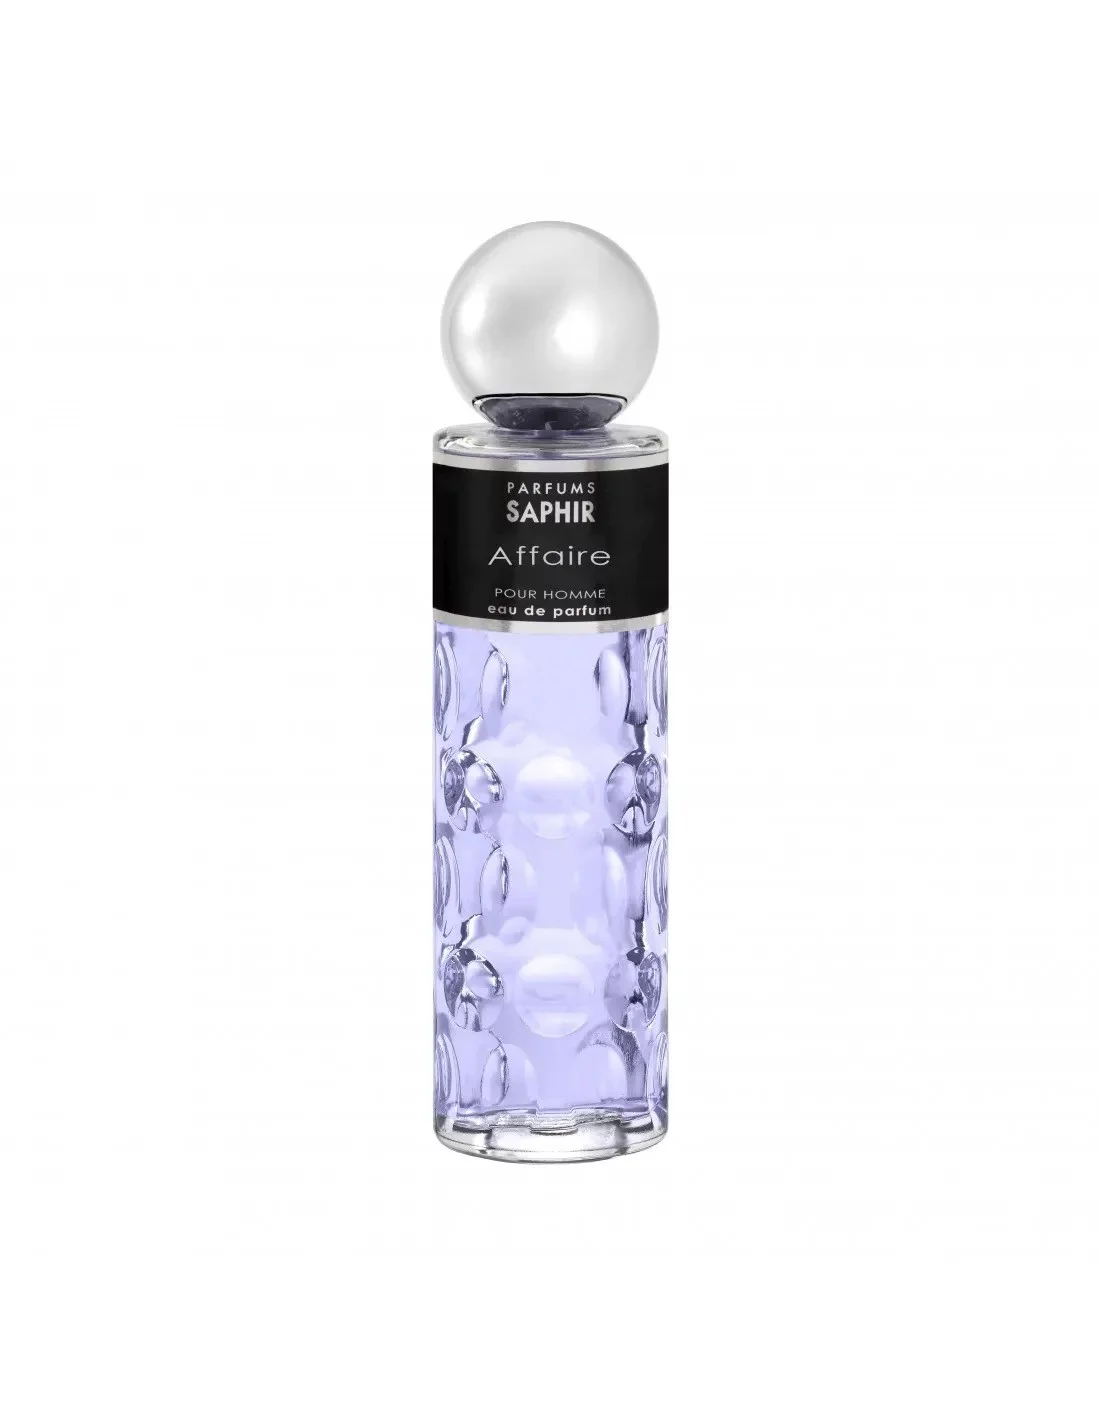 Image of Parfums Saphir - Eau de Parfum 200 ml - affaire